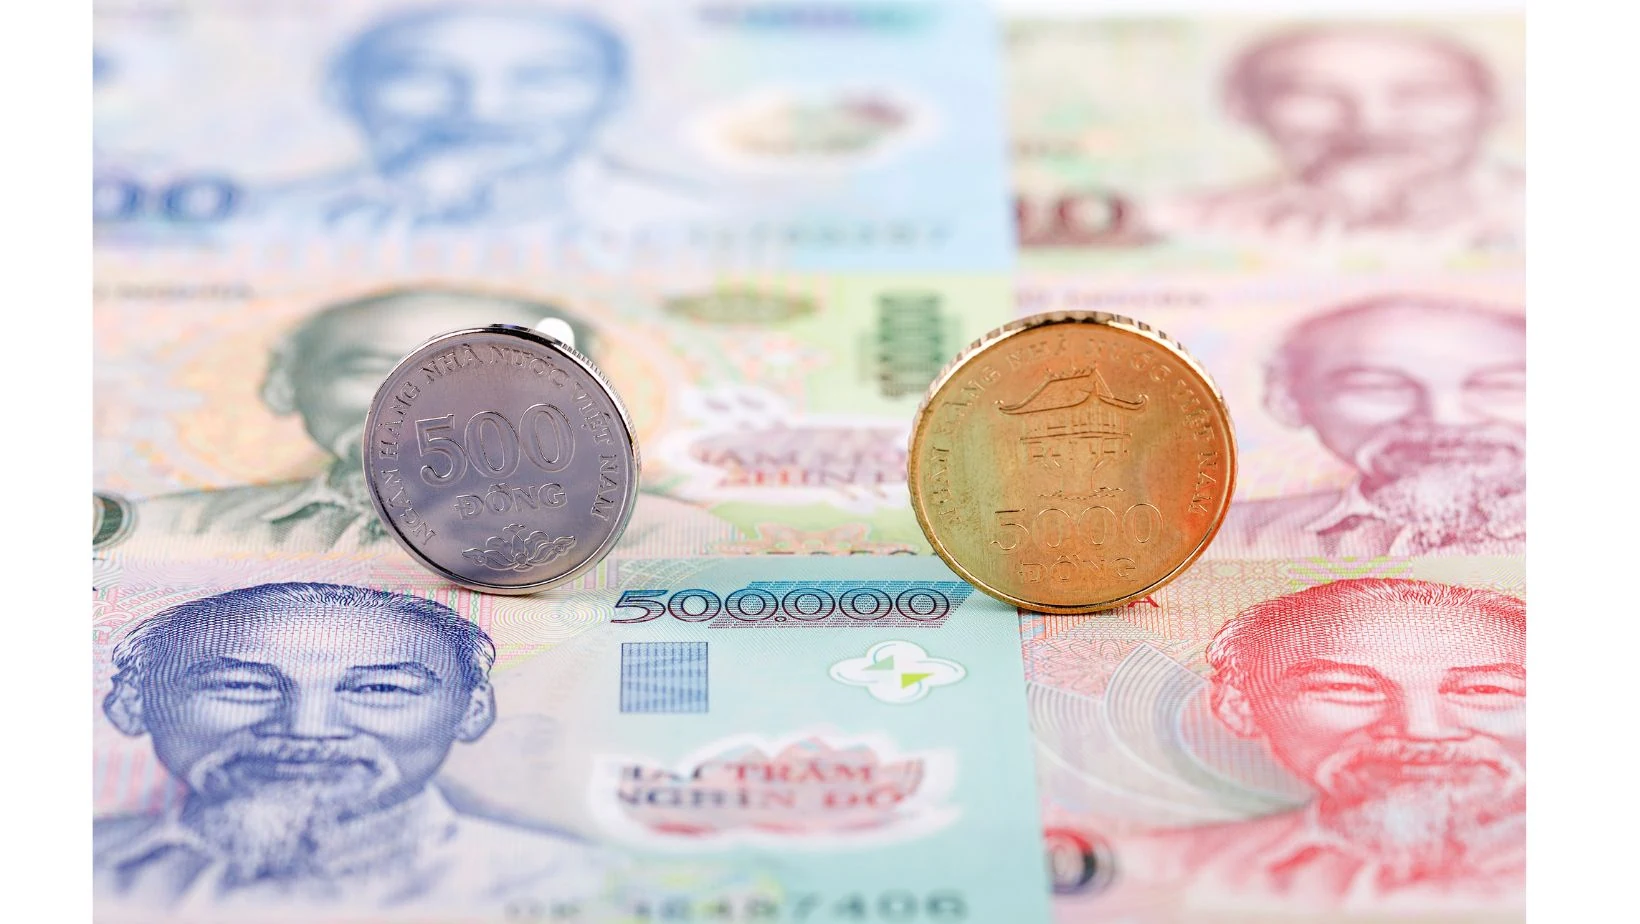 Uang kertas dan koin Vietnam